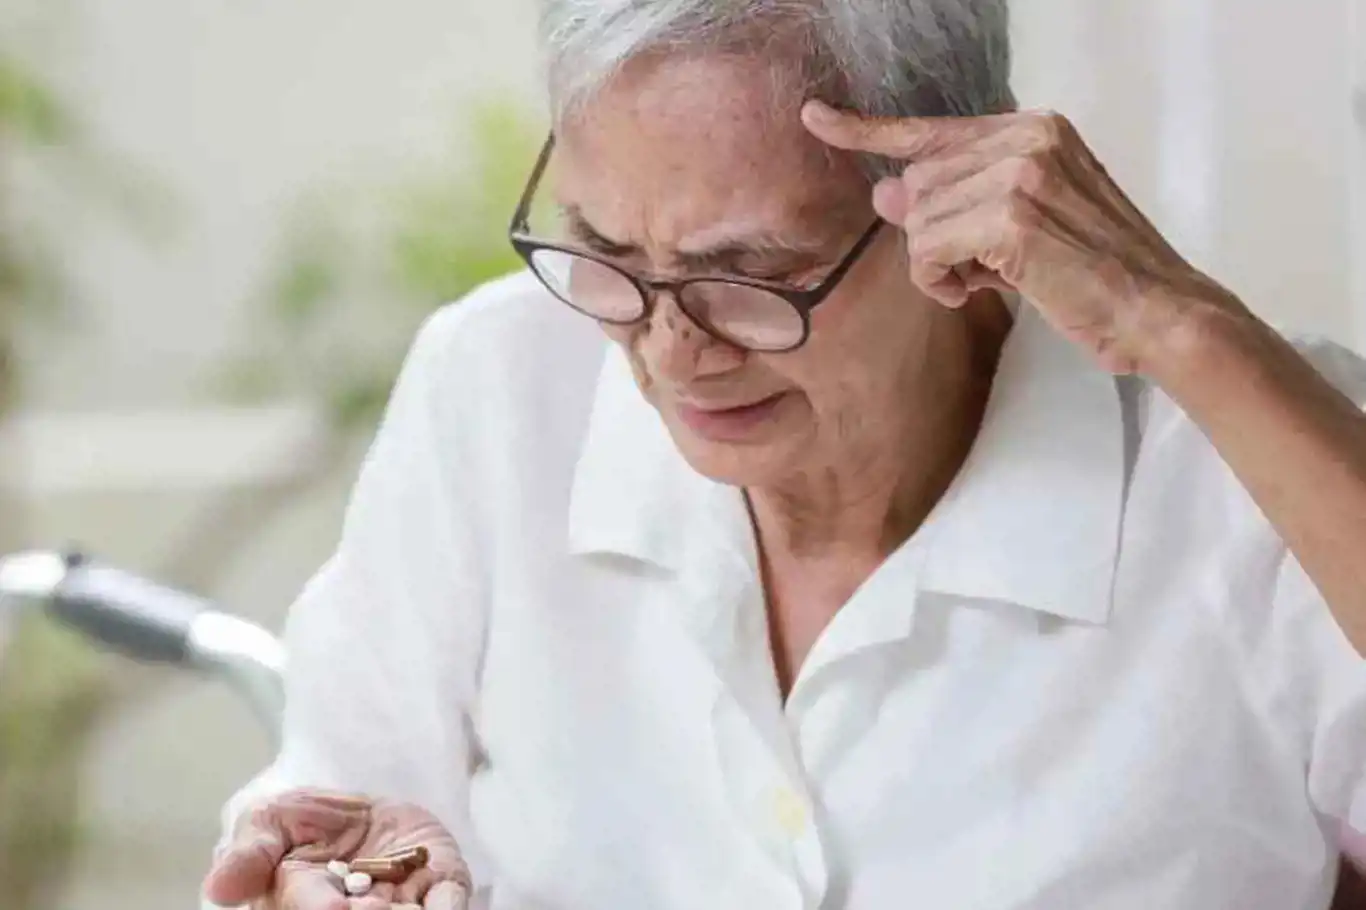 Doç. Dr. İrem Taşçı: Alzheimer'a fiziki muayene ile tanı konulamaz